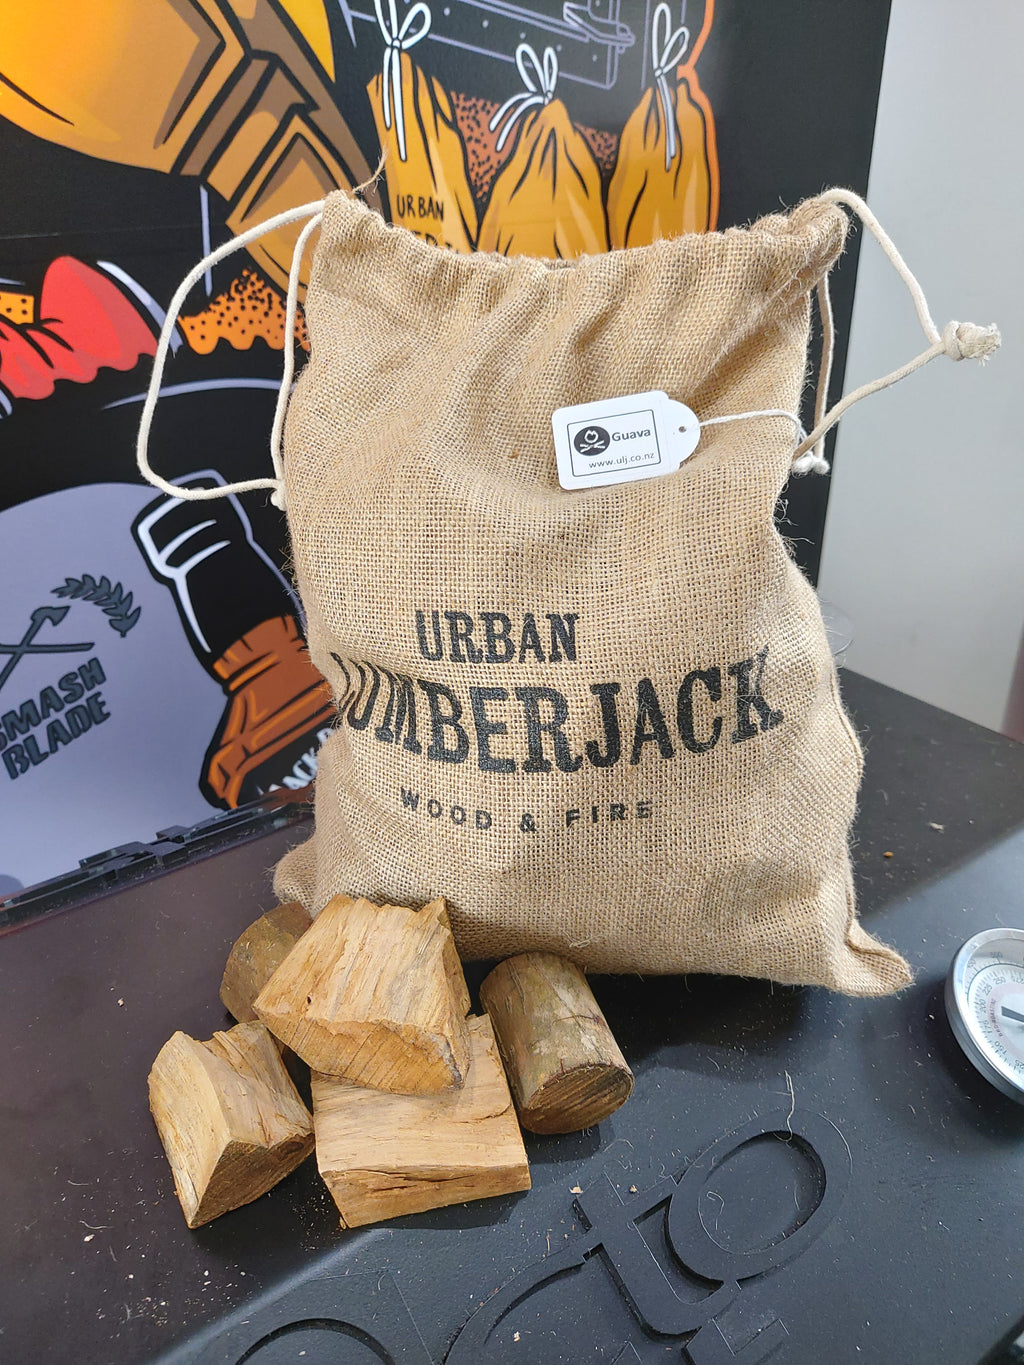 Feijoa Wood Chunks 3kg By Urban Lumberjack